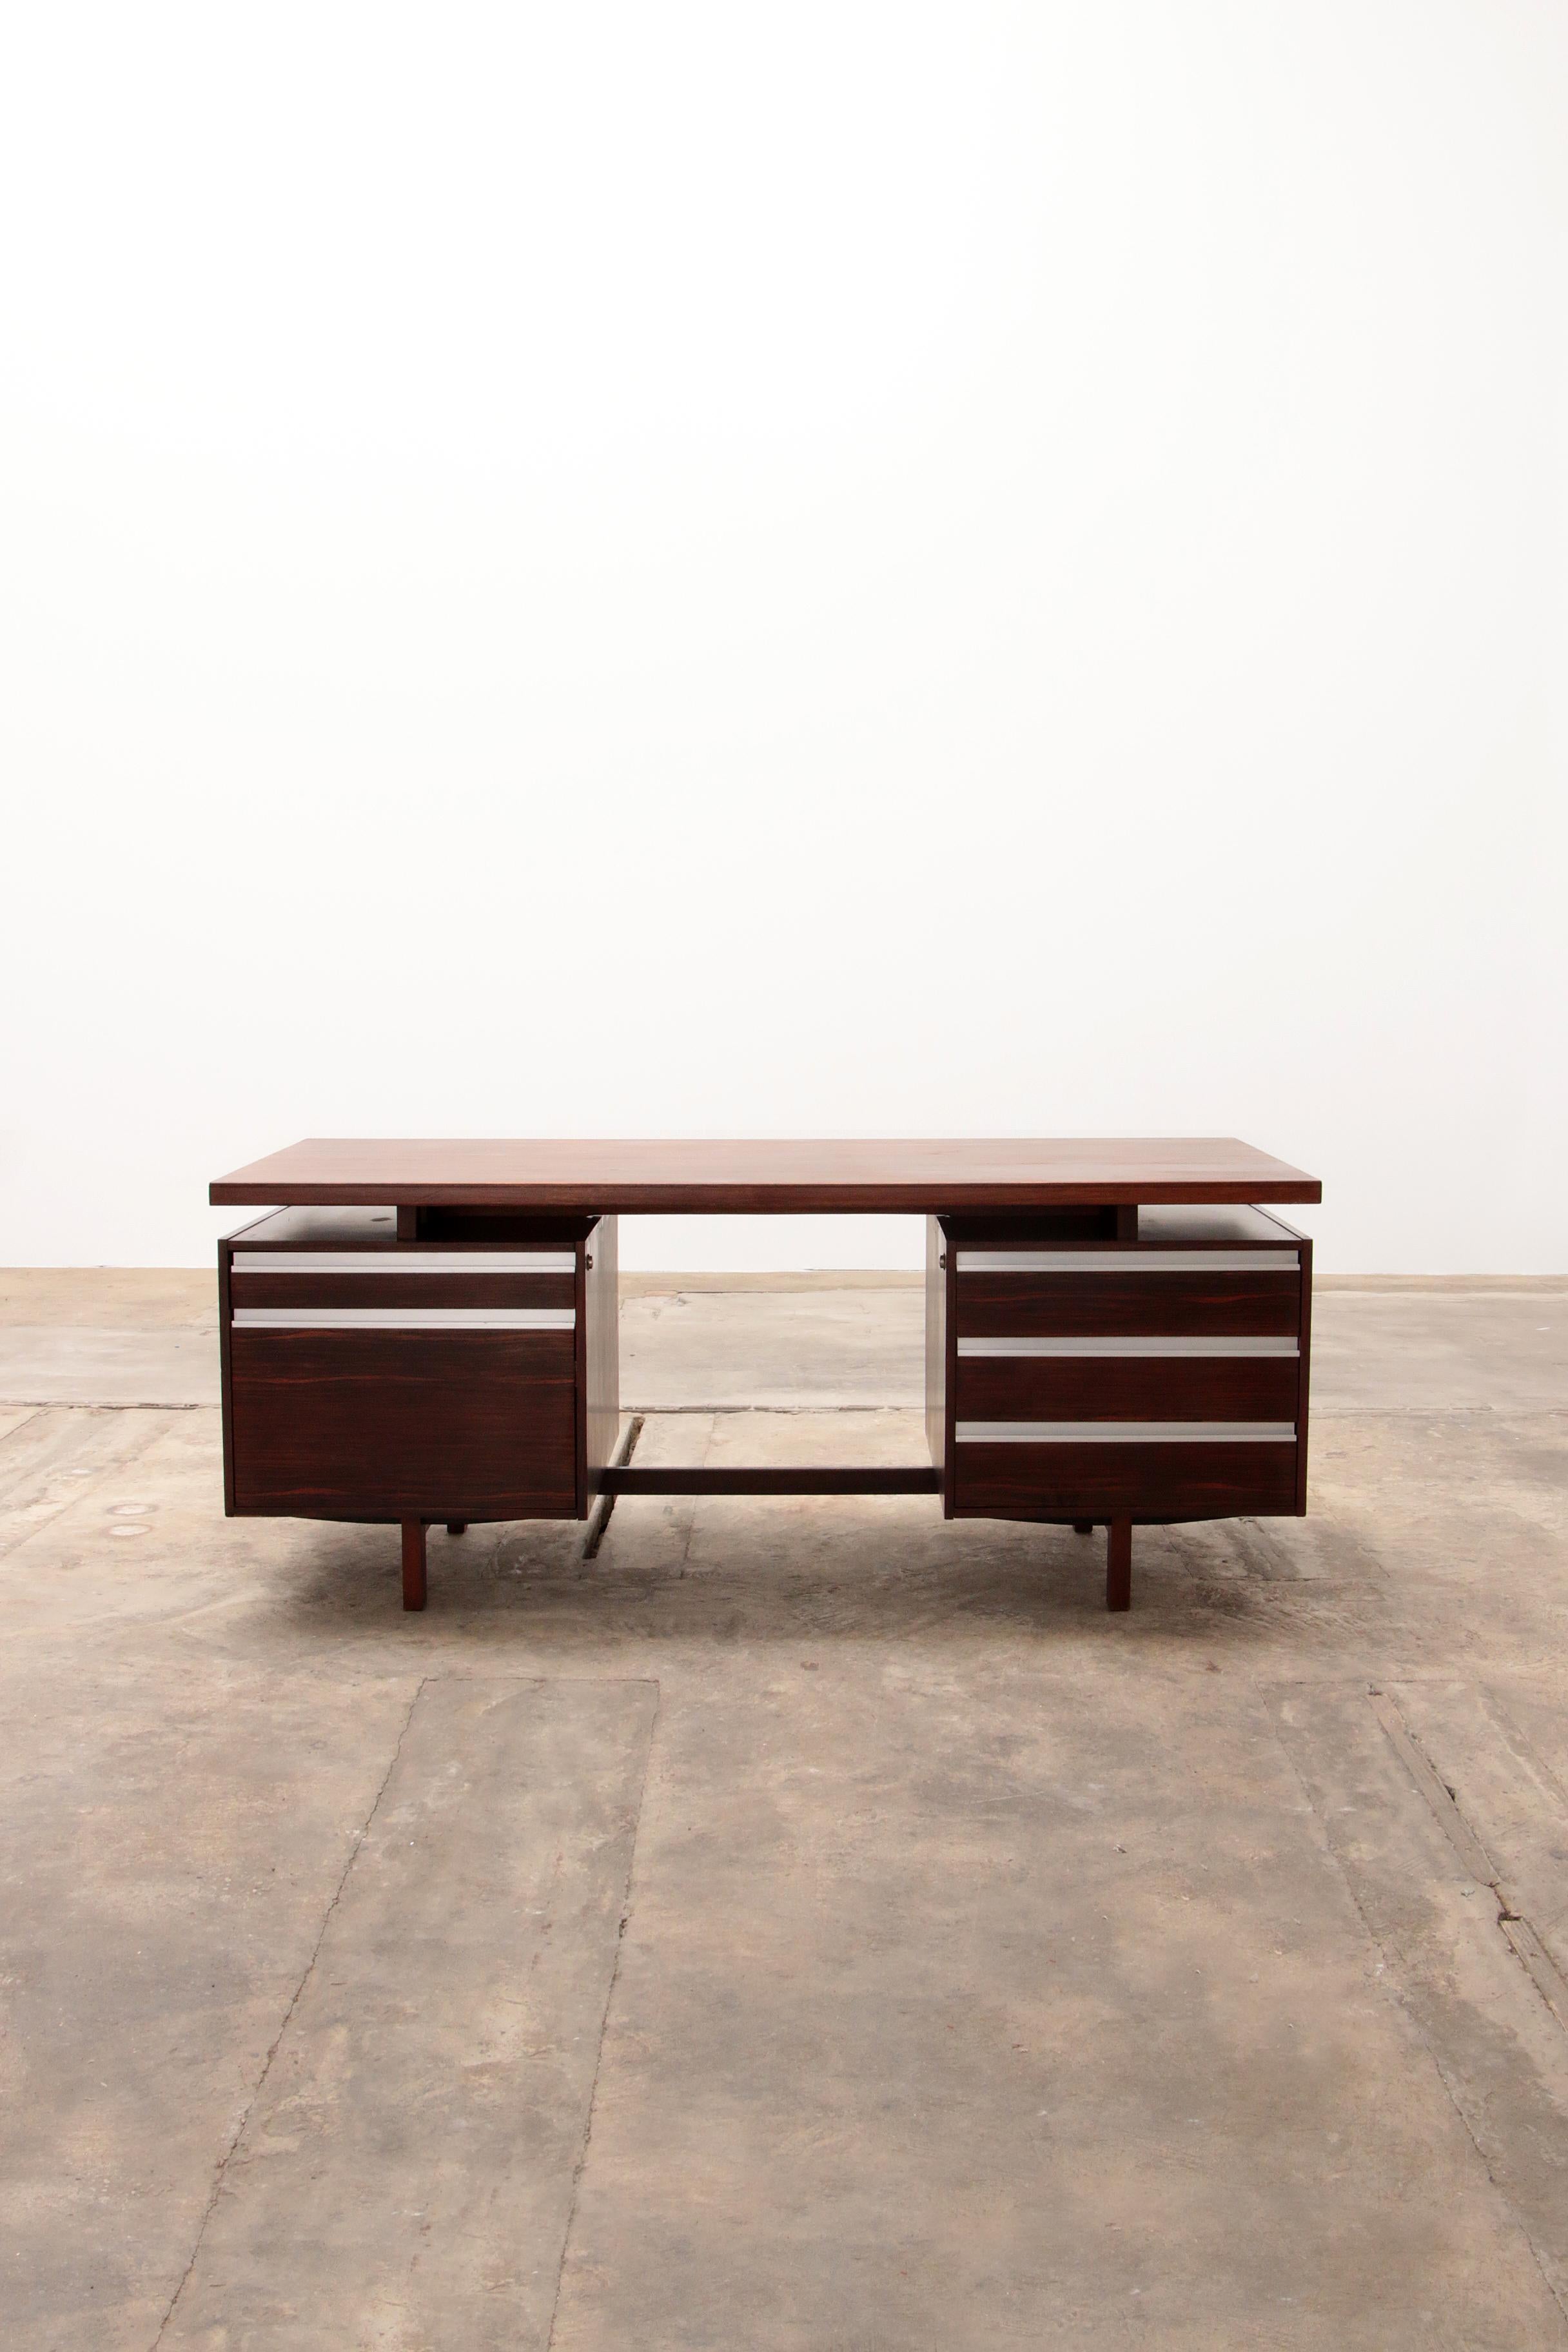 Seltener Chefschreibtisch Modell J1, entworfen von Kho Liang Ie für Fristho im Jahr 1956.

Executive-Schreibtisch aus Holz und mit Massivholz zwischen der Platte und den Beinen fertig, die Griffe sind aus Aluminium.

Der Schreibtisch hat an der